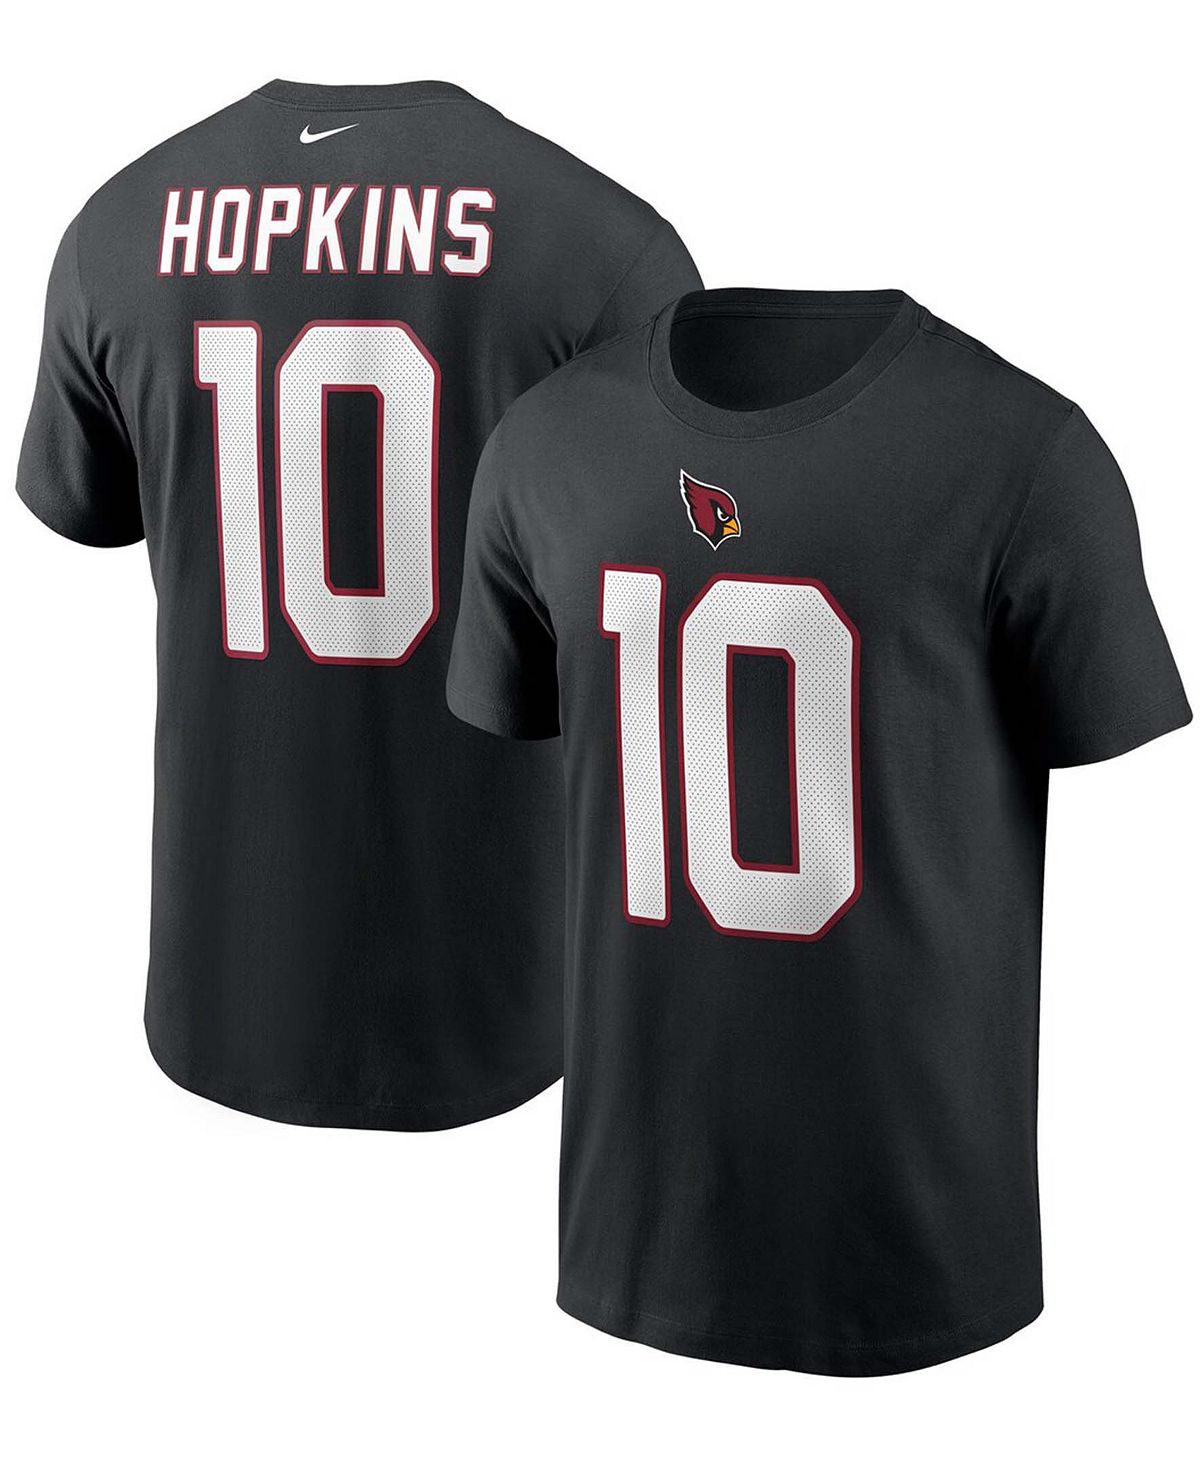 Мужская футболка deandre hopkins black arizona cardinals с именем и номером Nike, черный